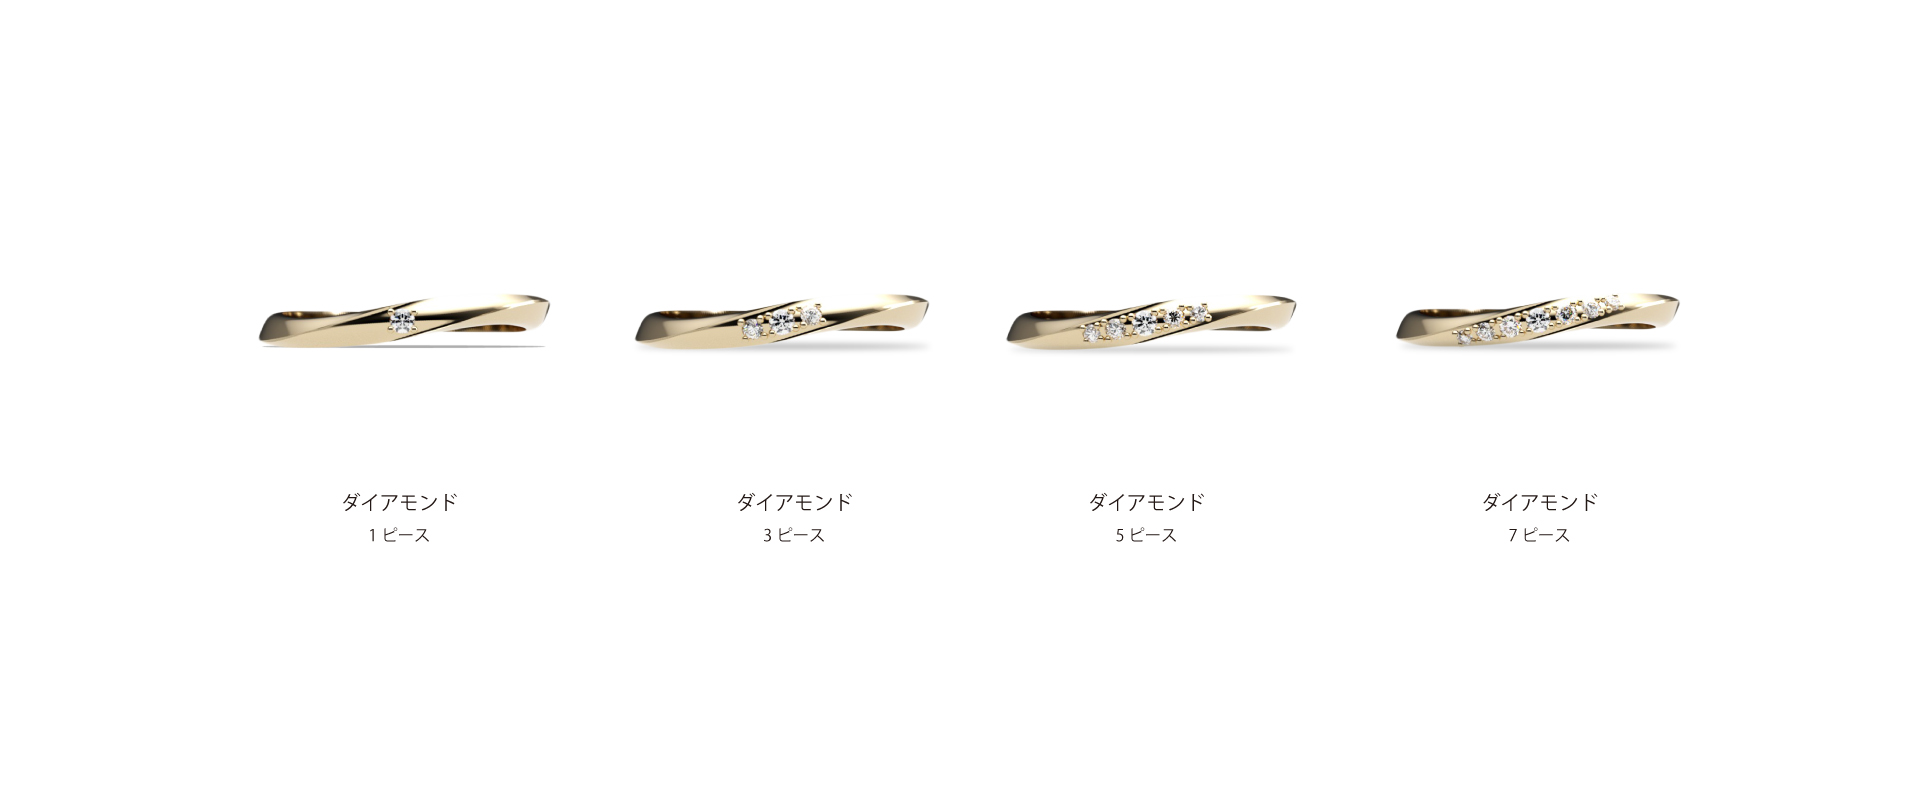 結婚指輪にセッティングされるのは高品質なダイアモンドを使用しています